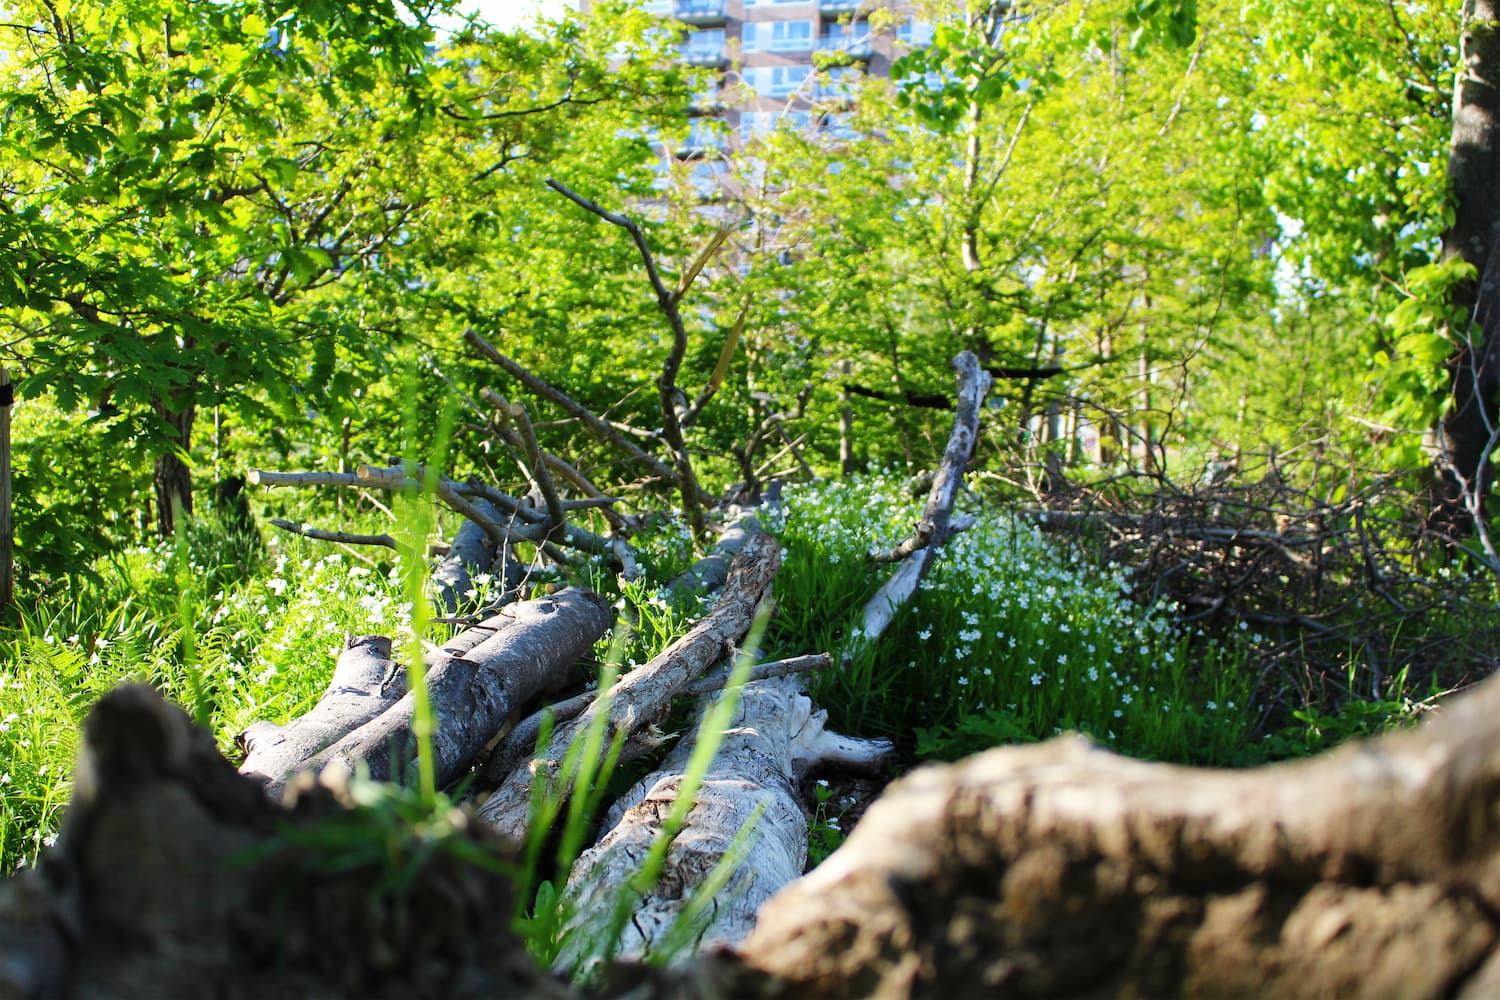 I Ørestad genanvendes afhuggede grene og andet affaldstræ, så det bliver i bydelen - blandt andet i form af såkaldte kvashegn og -bunker. Til gavn for biodiversitet i byen.